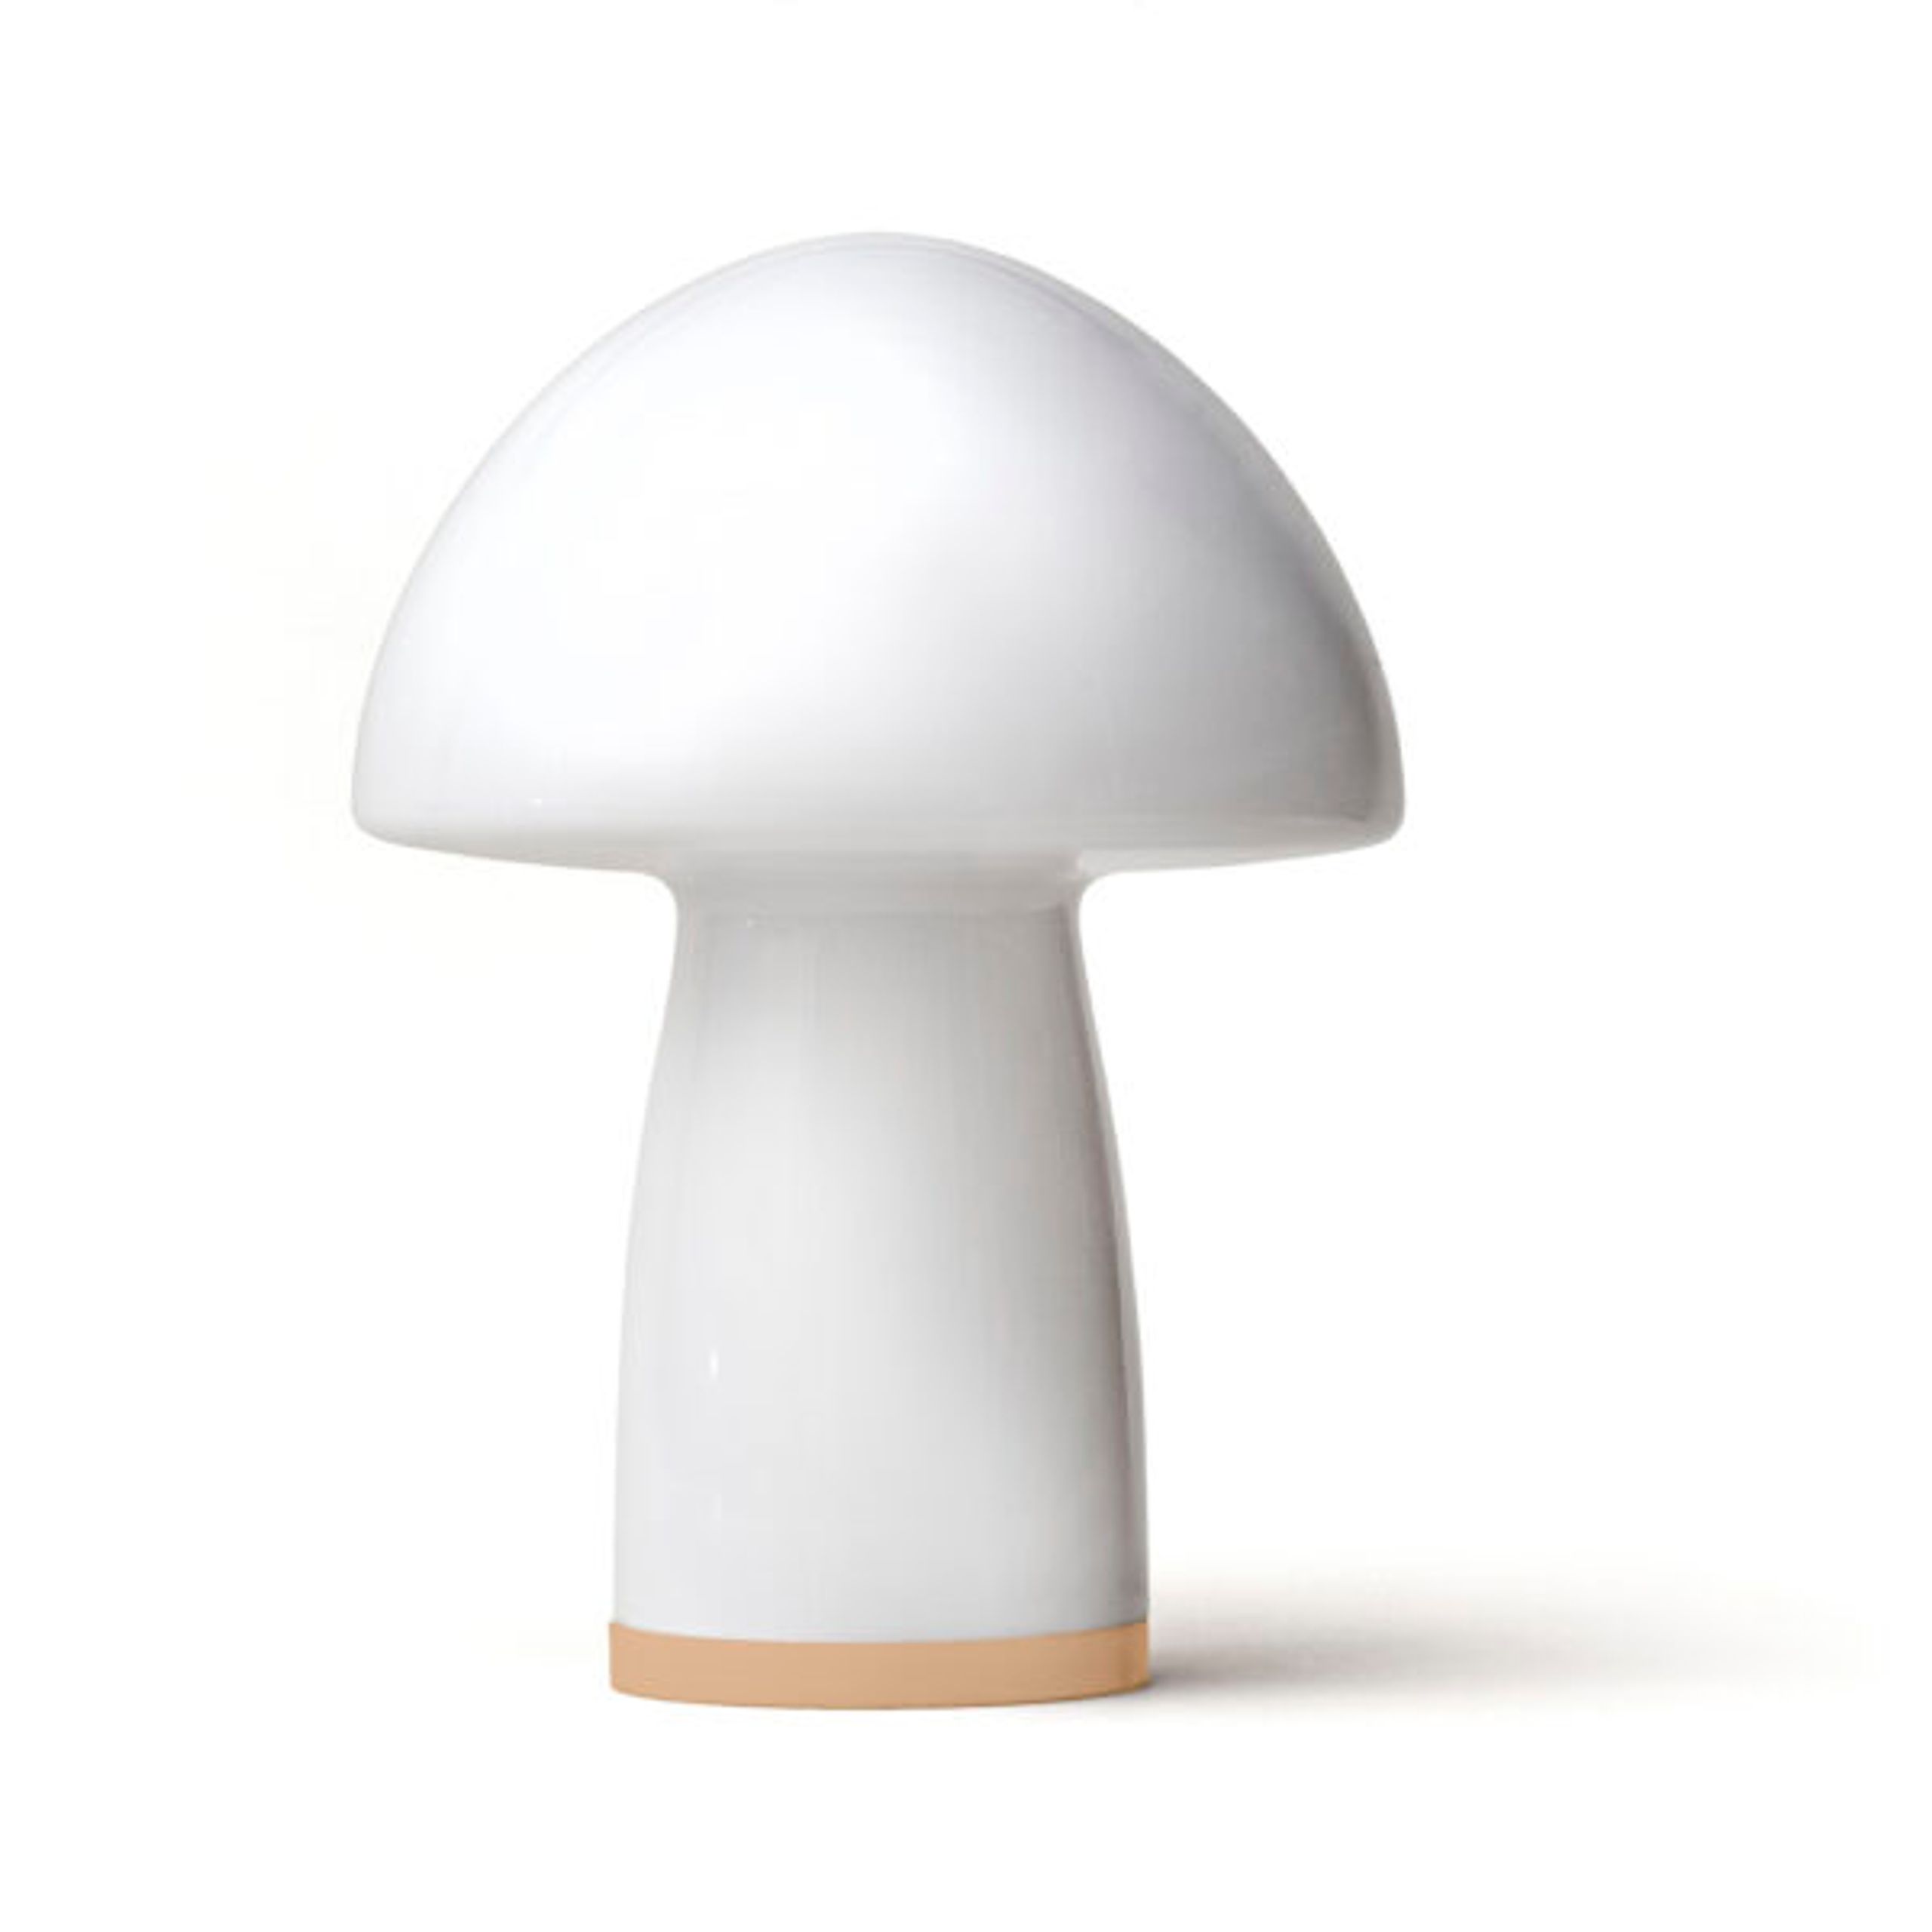 Shadelights - Tischlampe - GS1 Mushroom  - Brass / White